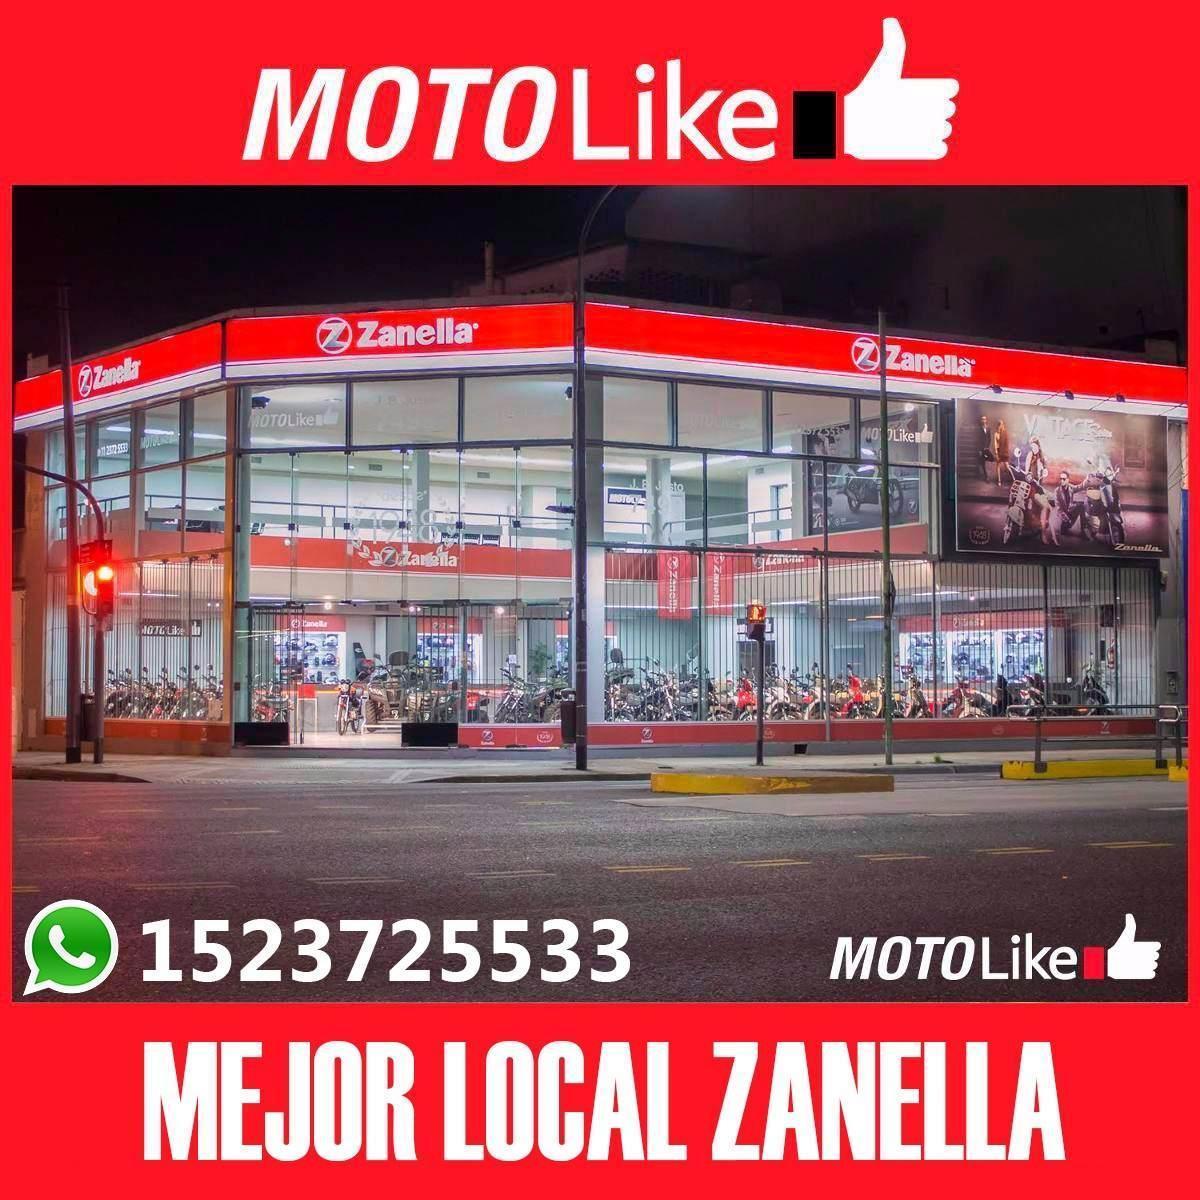 Zanella Hot 90 G2 Moto Like Oferta 0 Km